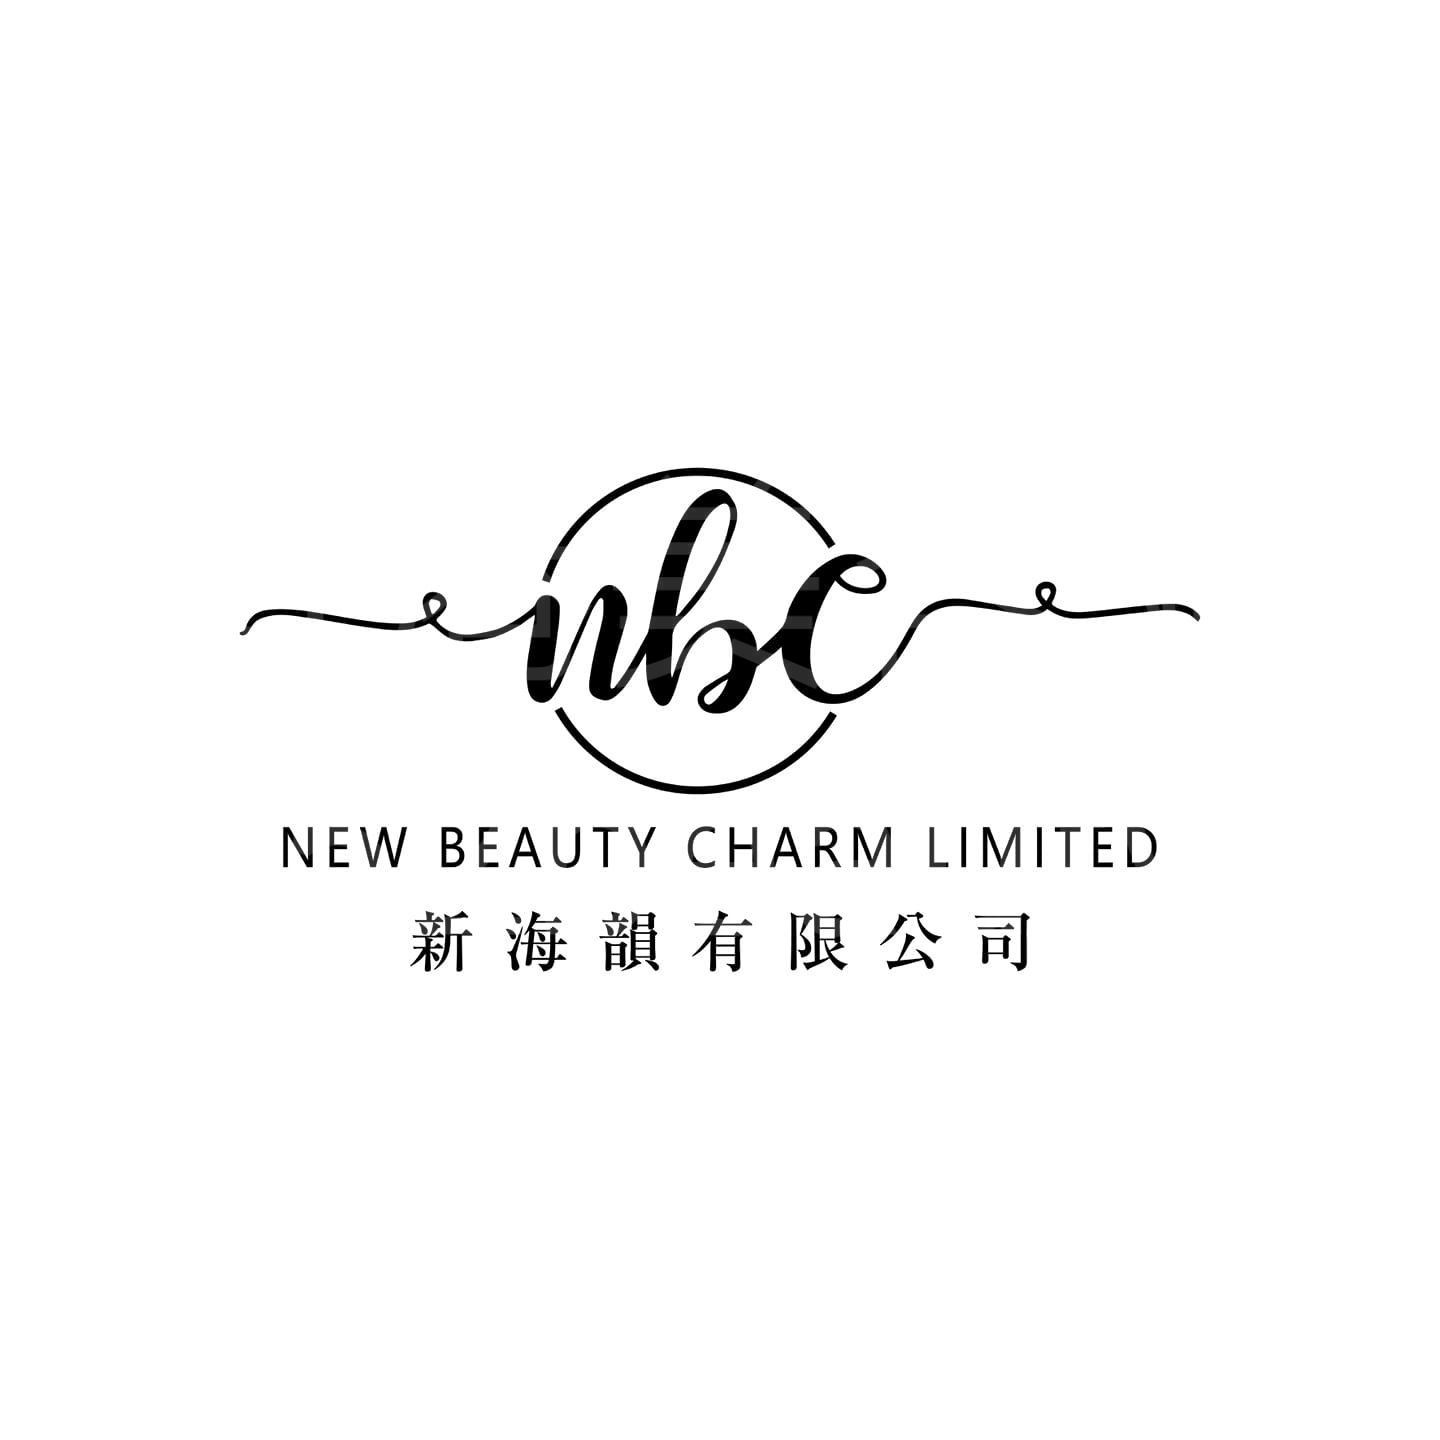 香港美容網 Hong Kong Beauty Salon 美容院 / 美容師: New Beauty Charm 新海韻